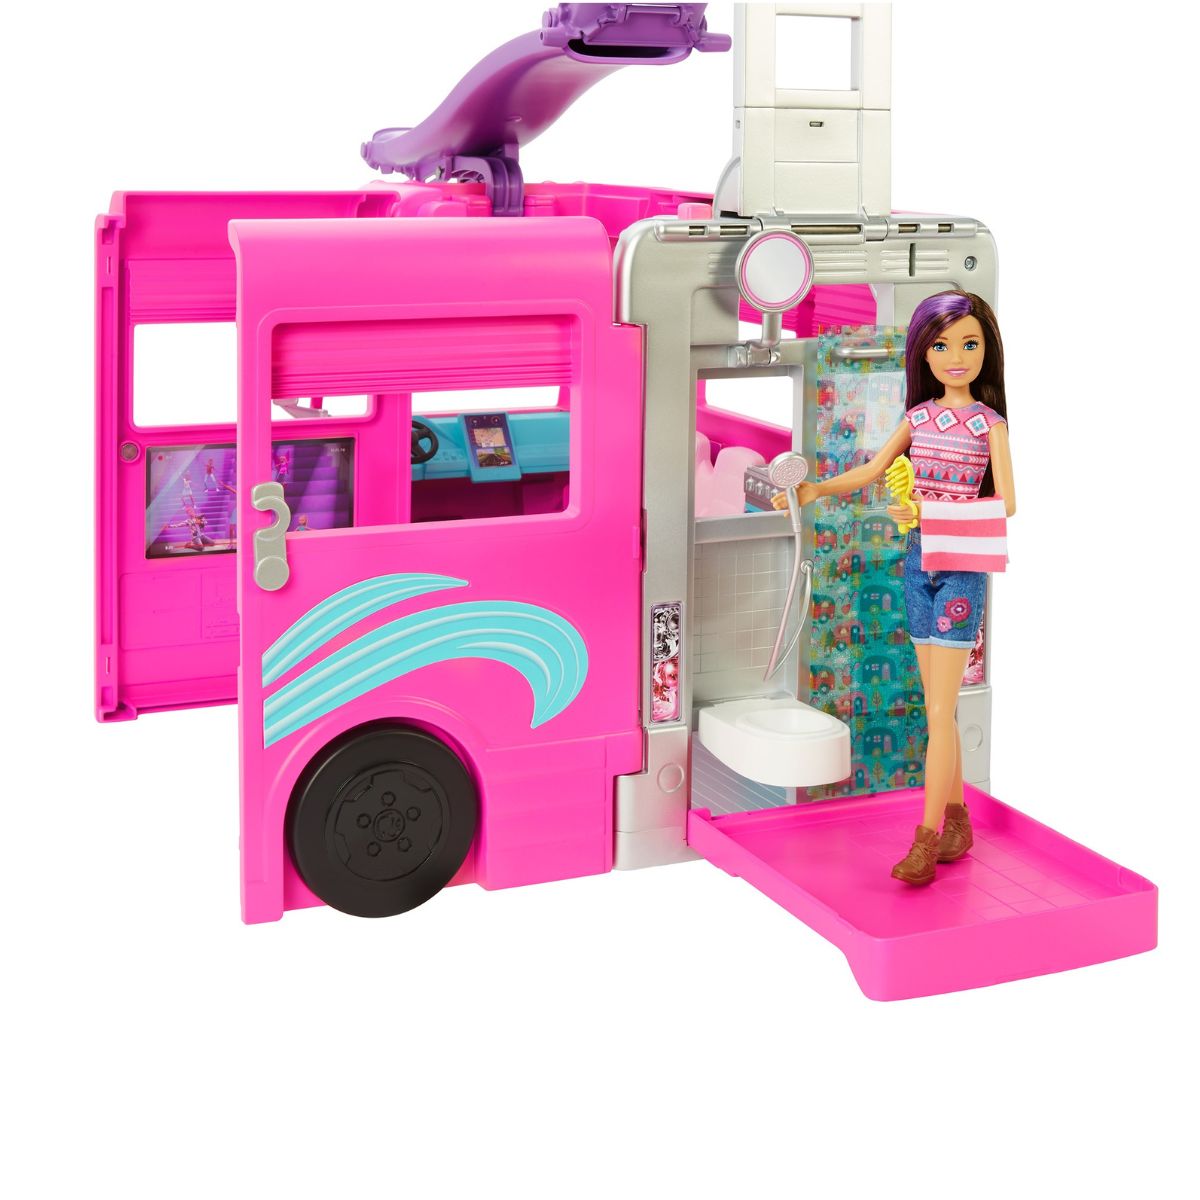 Barbie new dreamacamper 2022